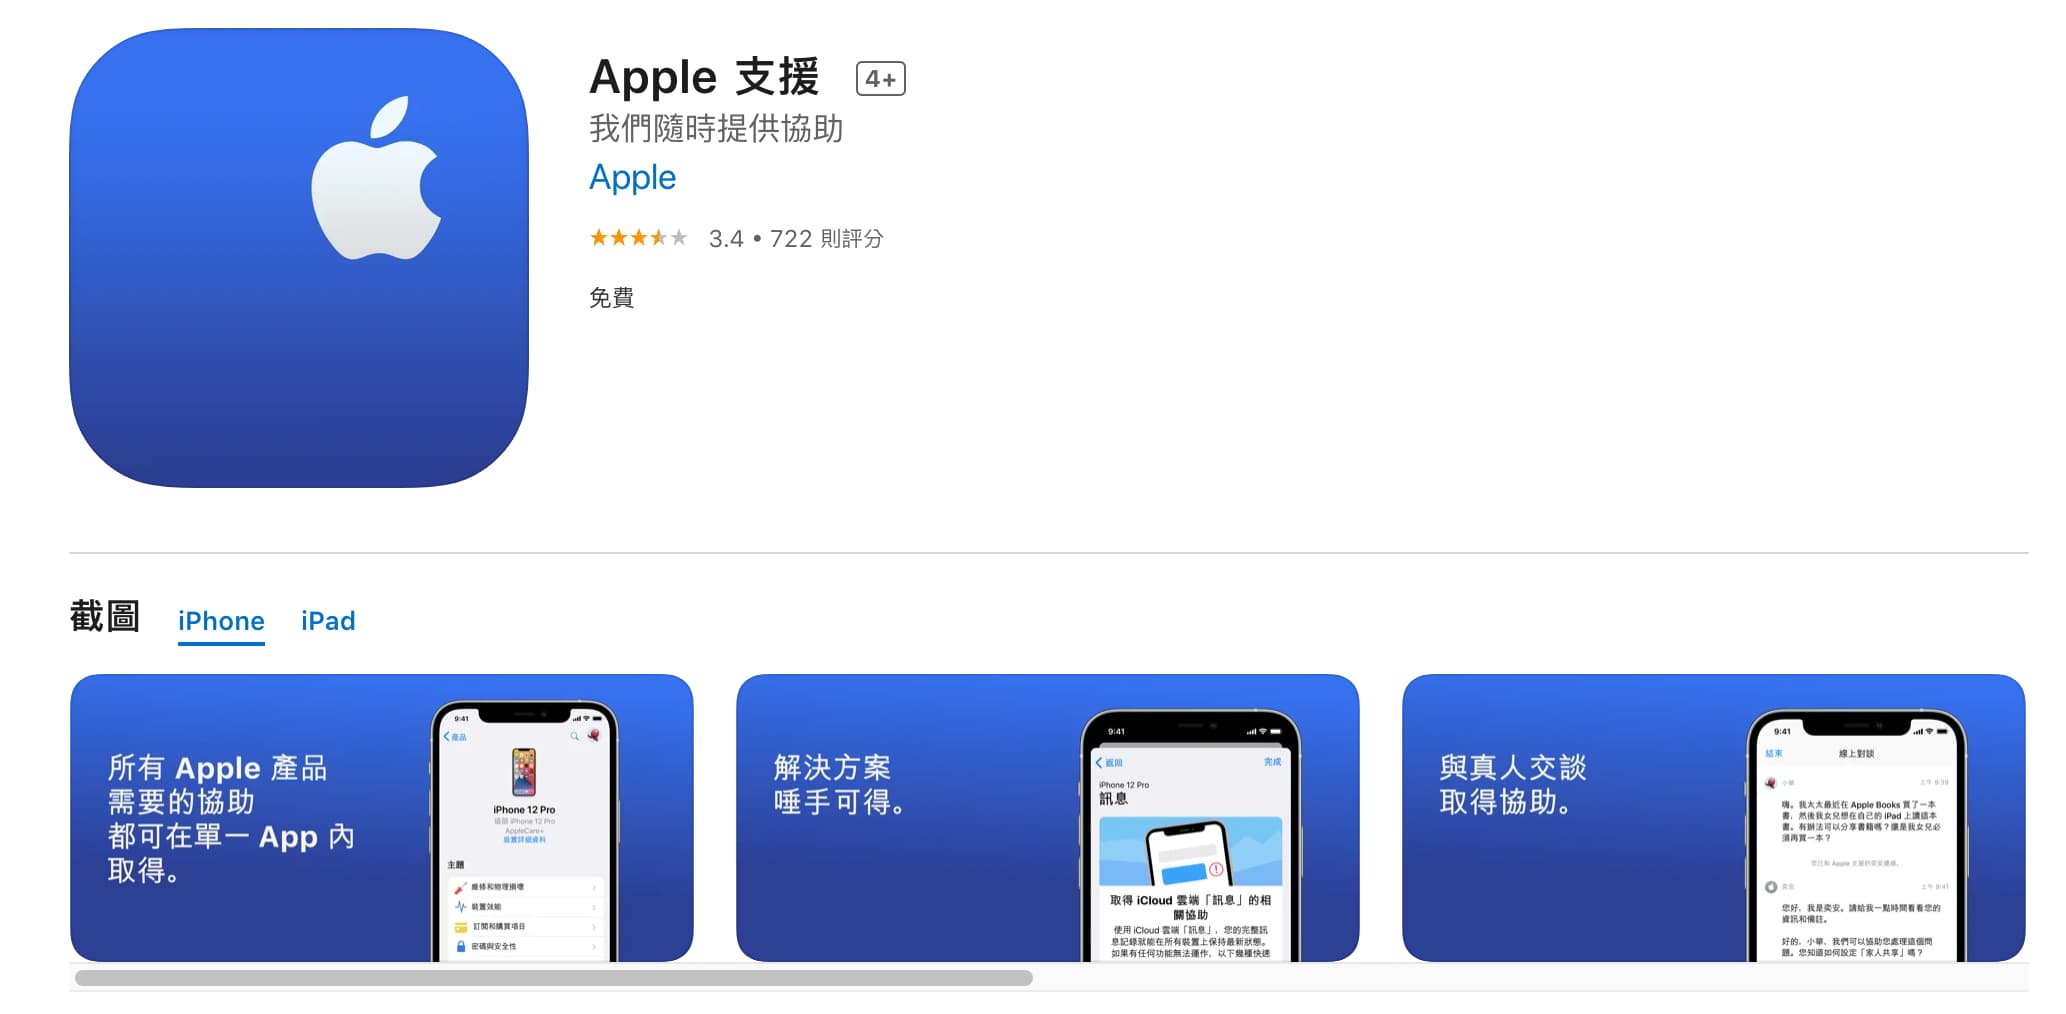 Apple支援App 是什麼